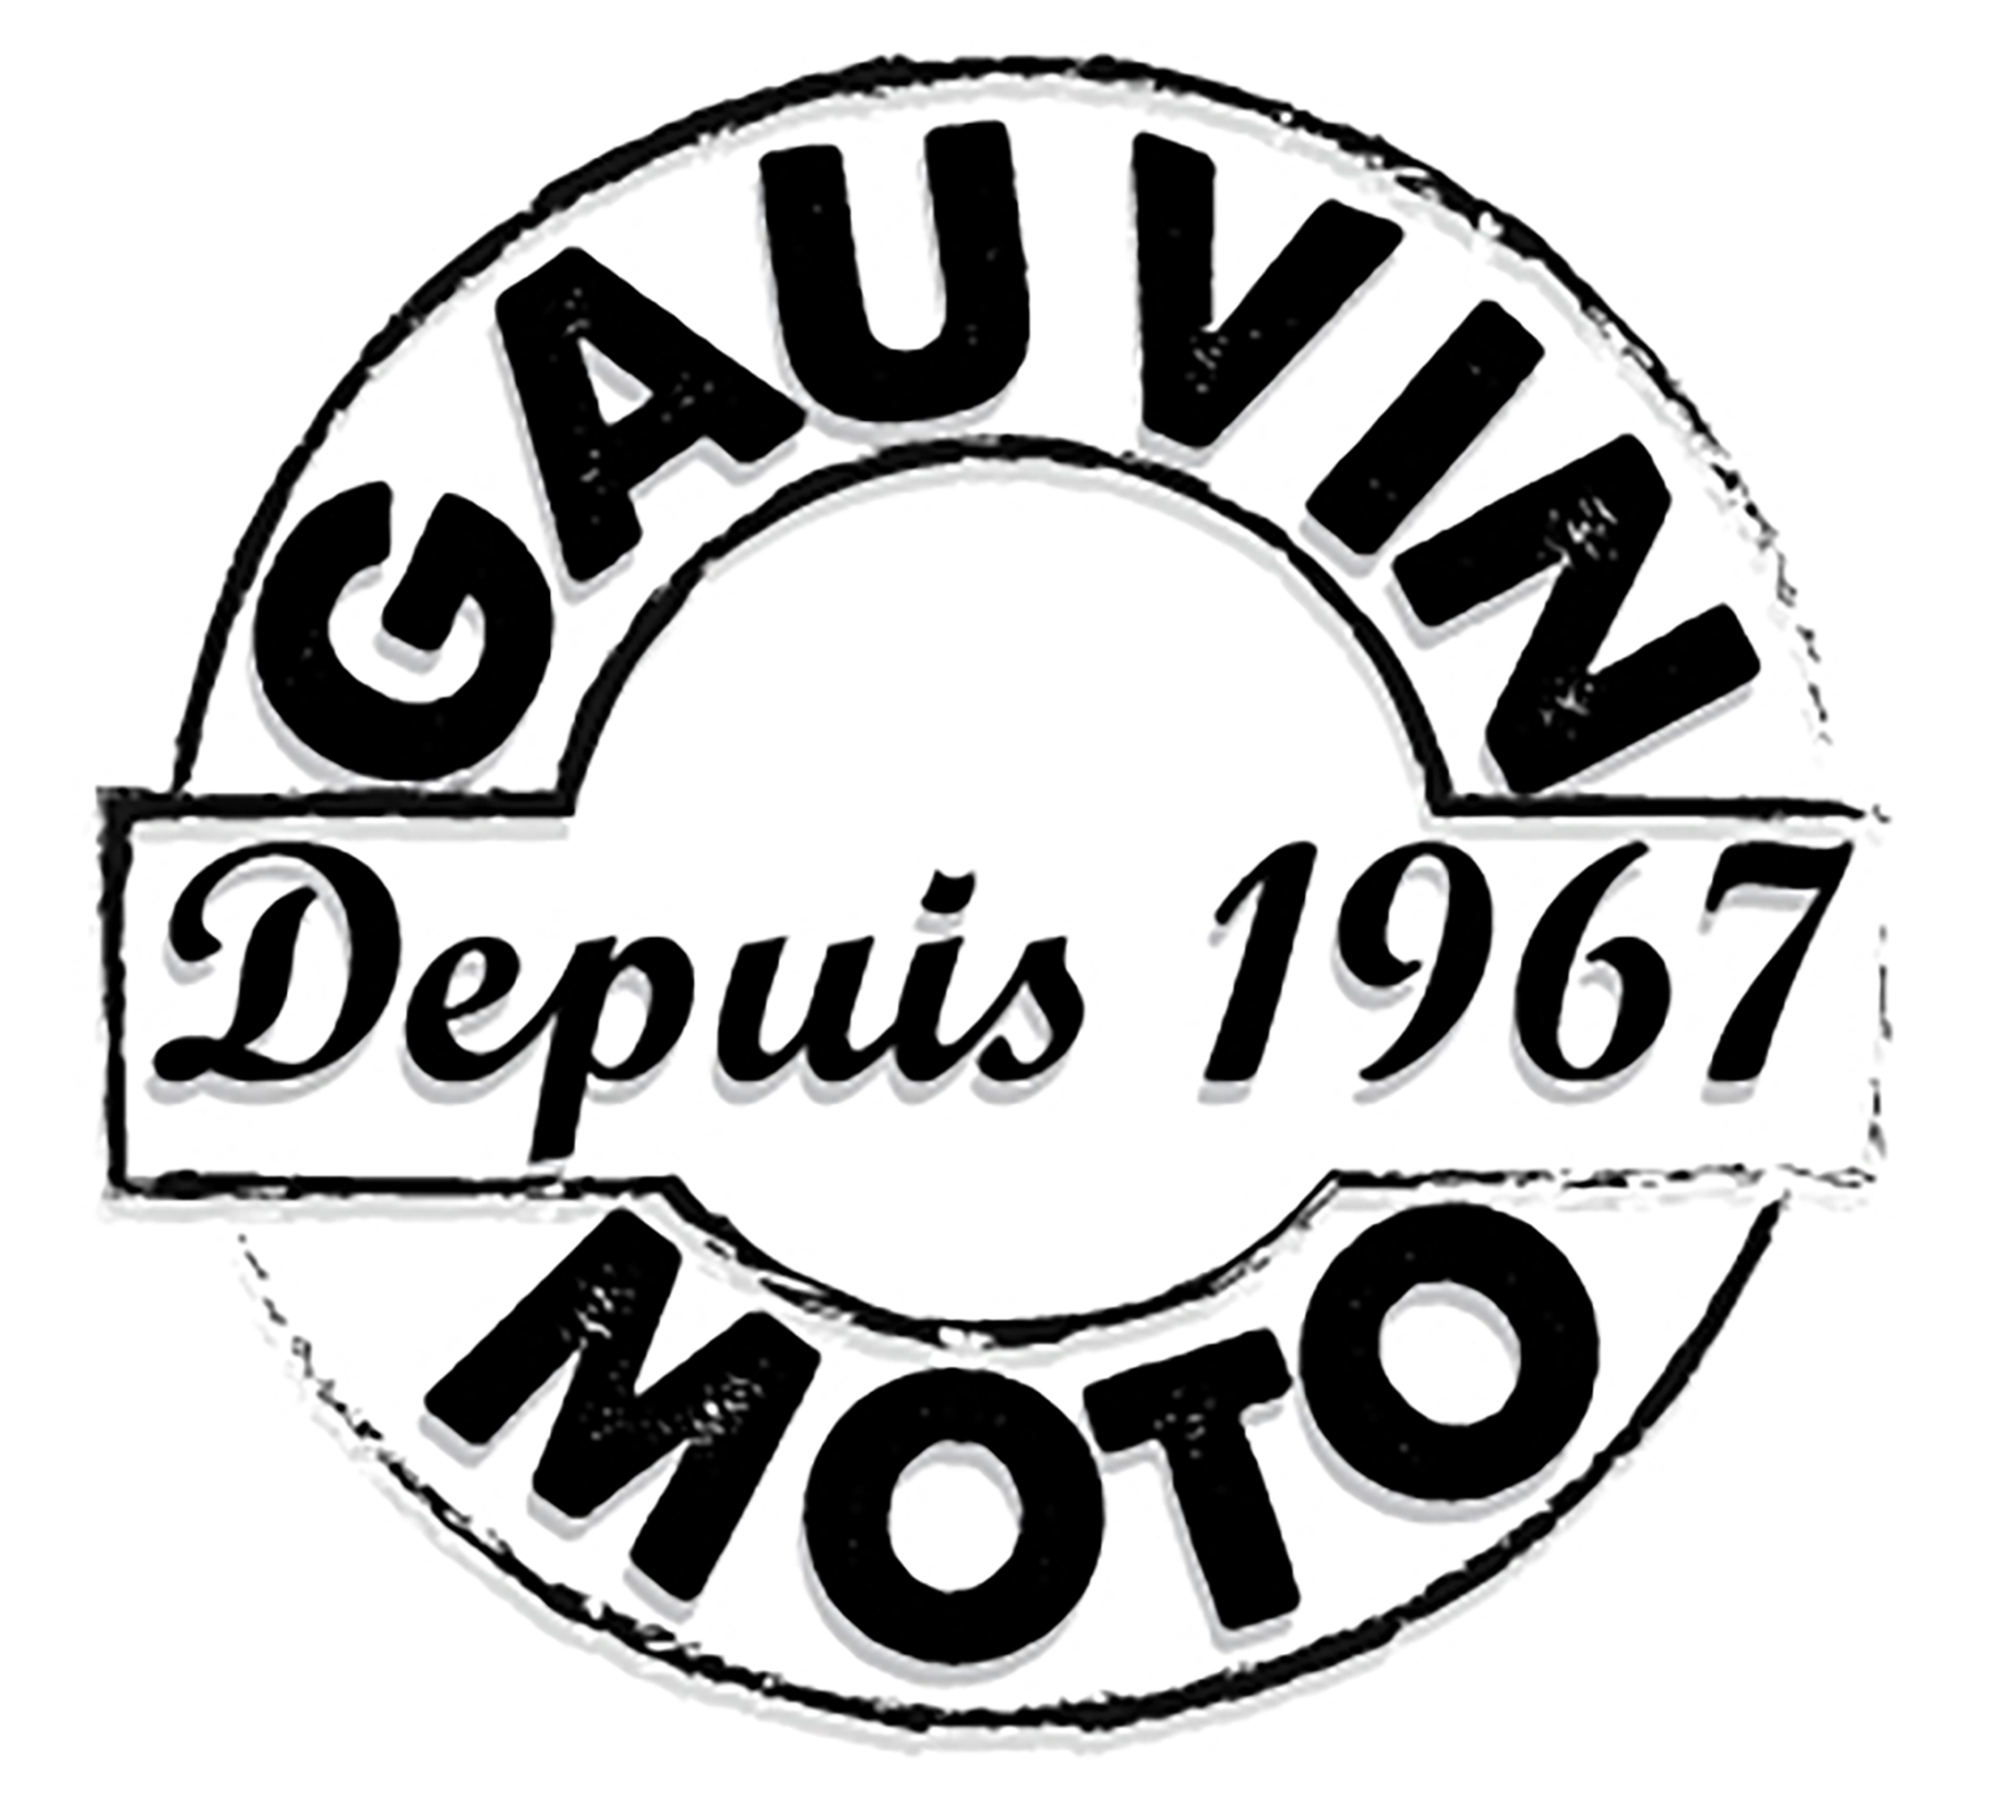 Gauvin moto depuis 1967